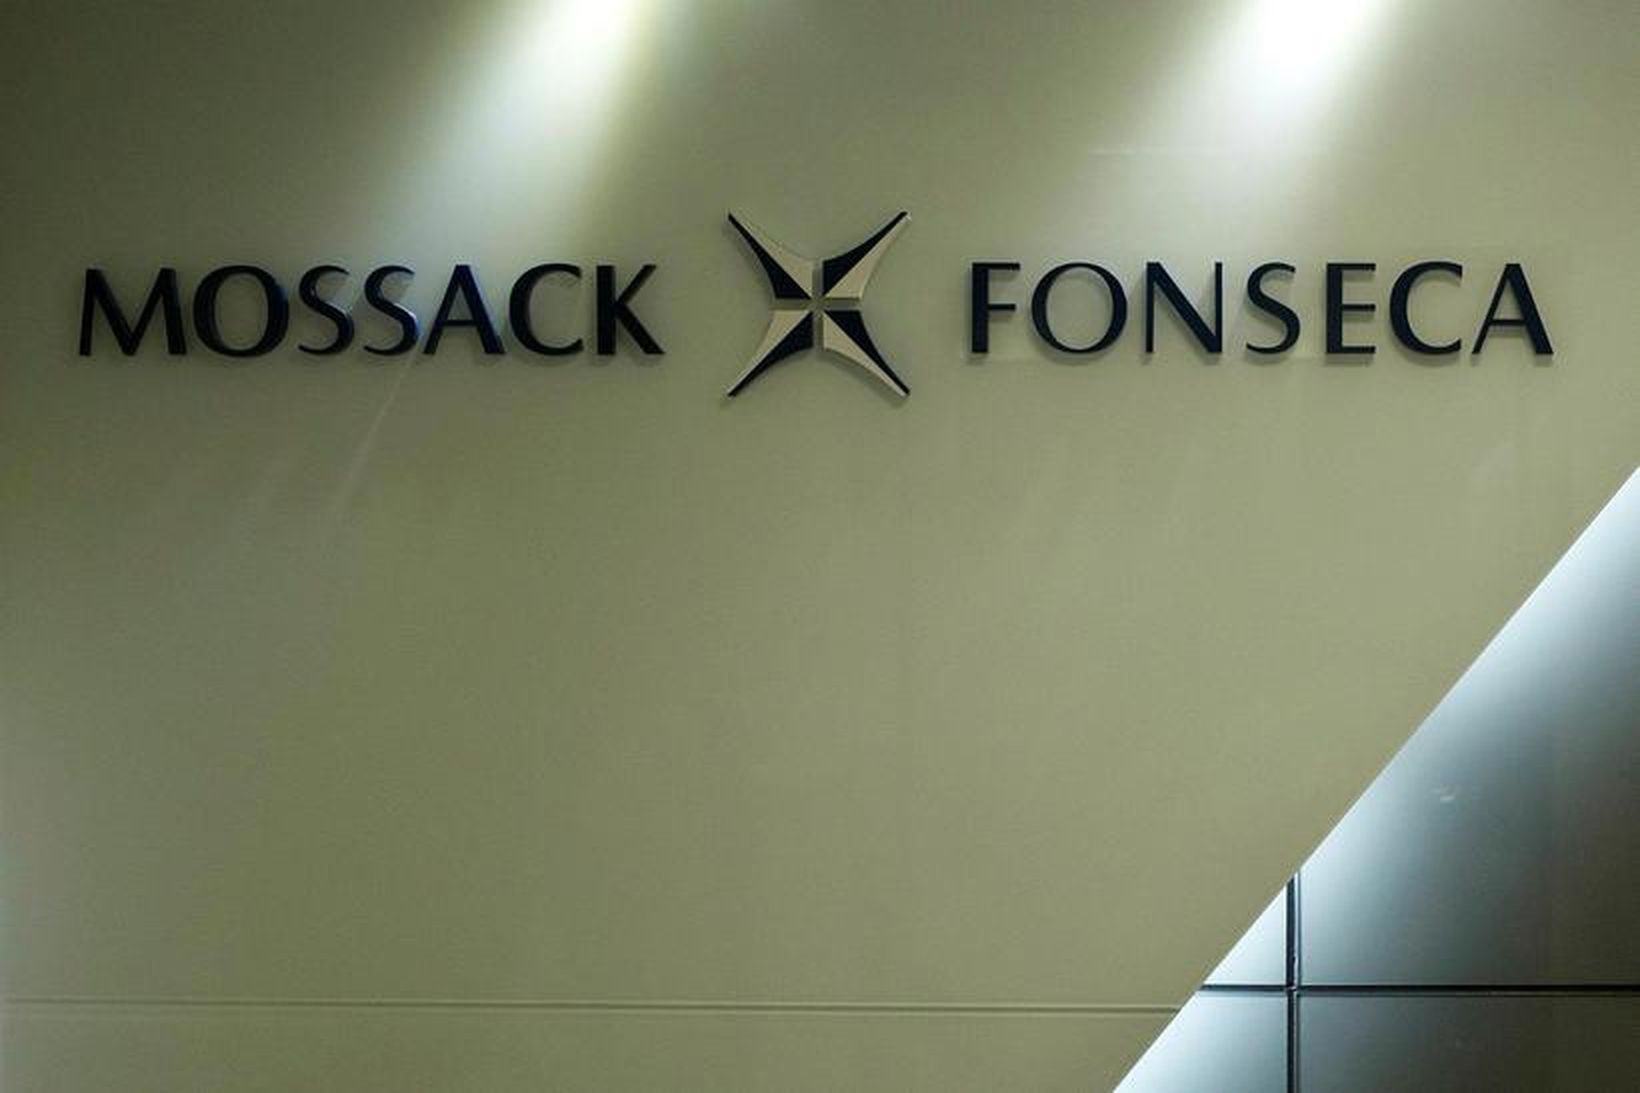 Panamaskjölunum var lekið frá lögfræðistofunni Mossack Fonseca.